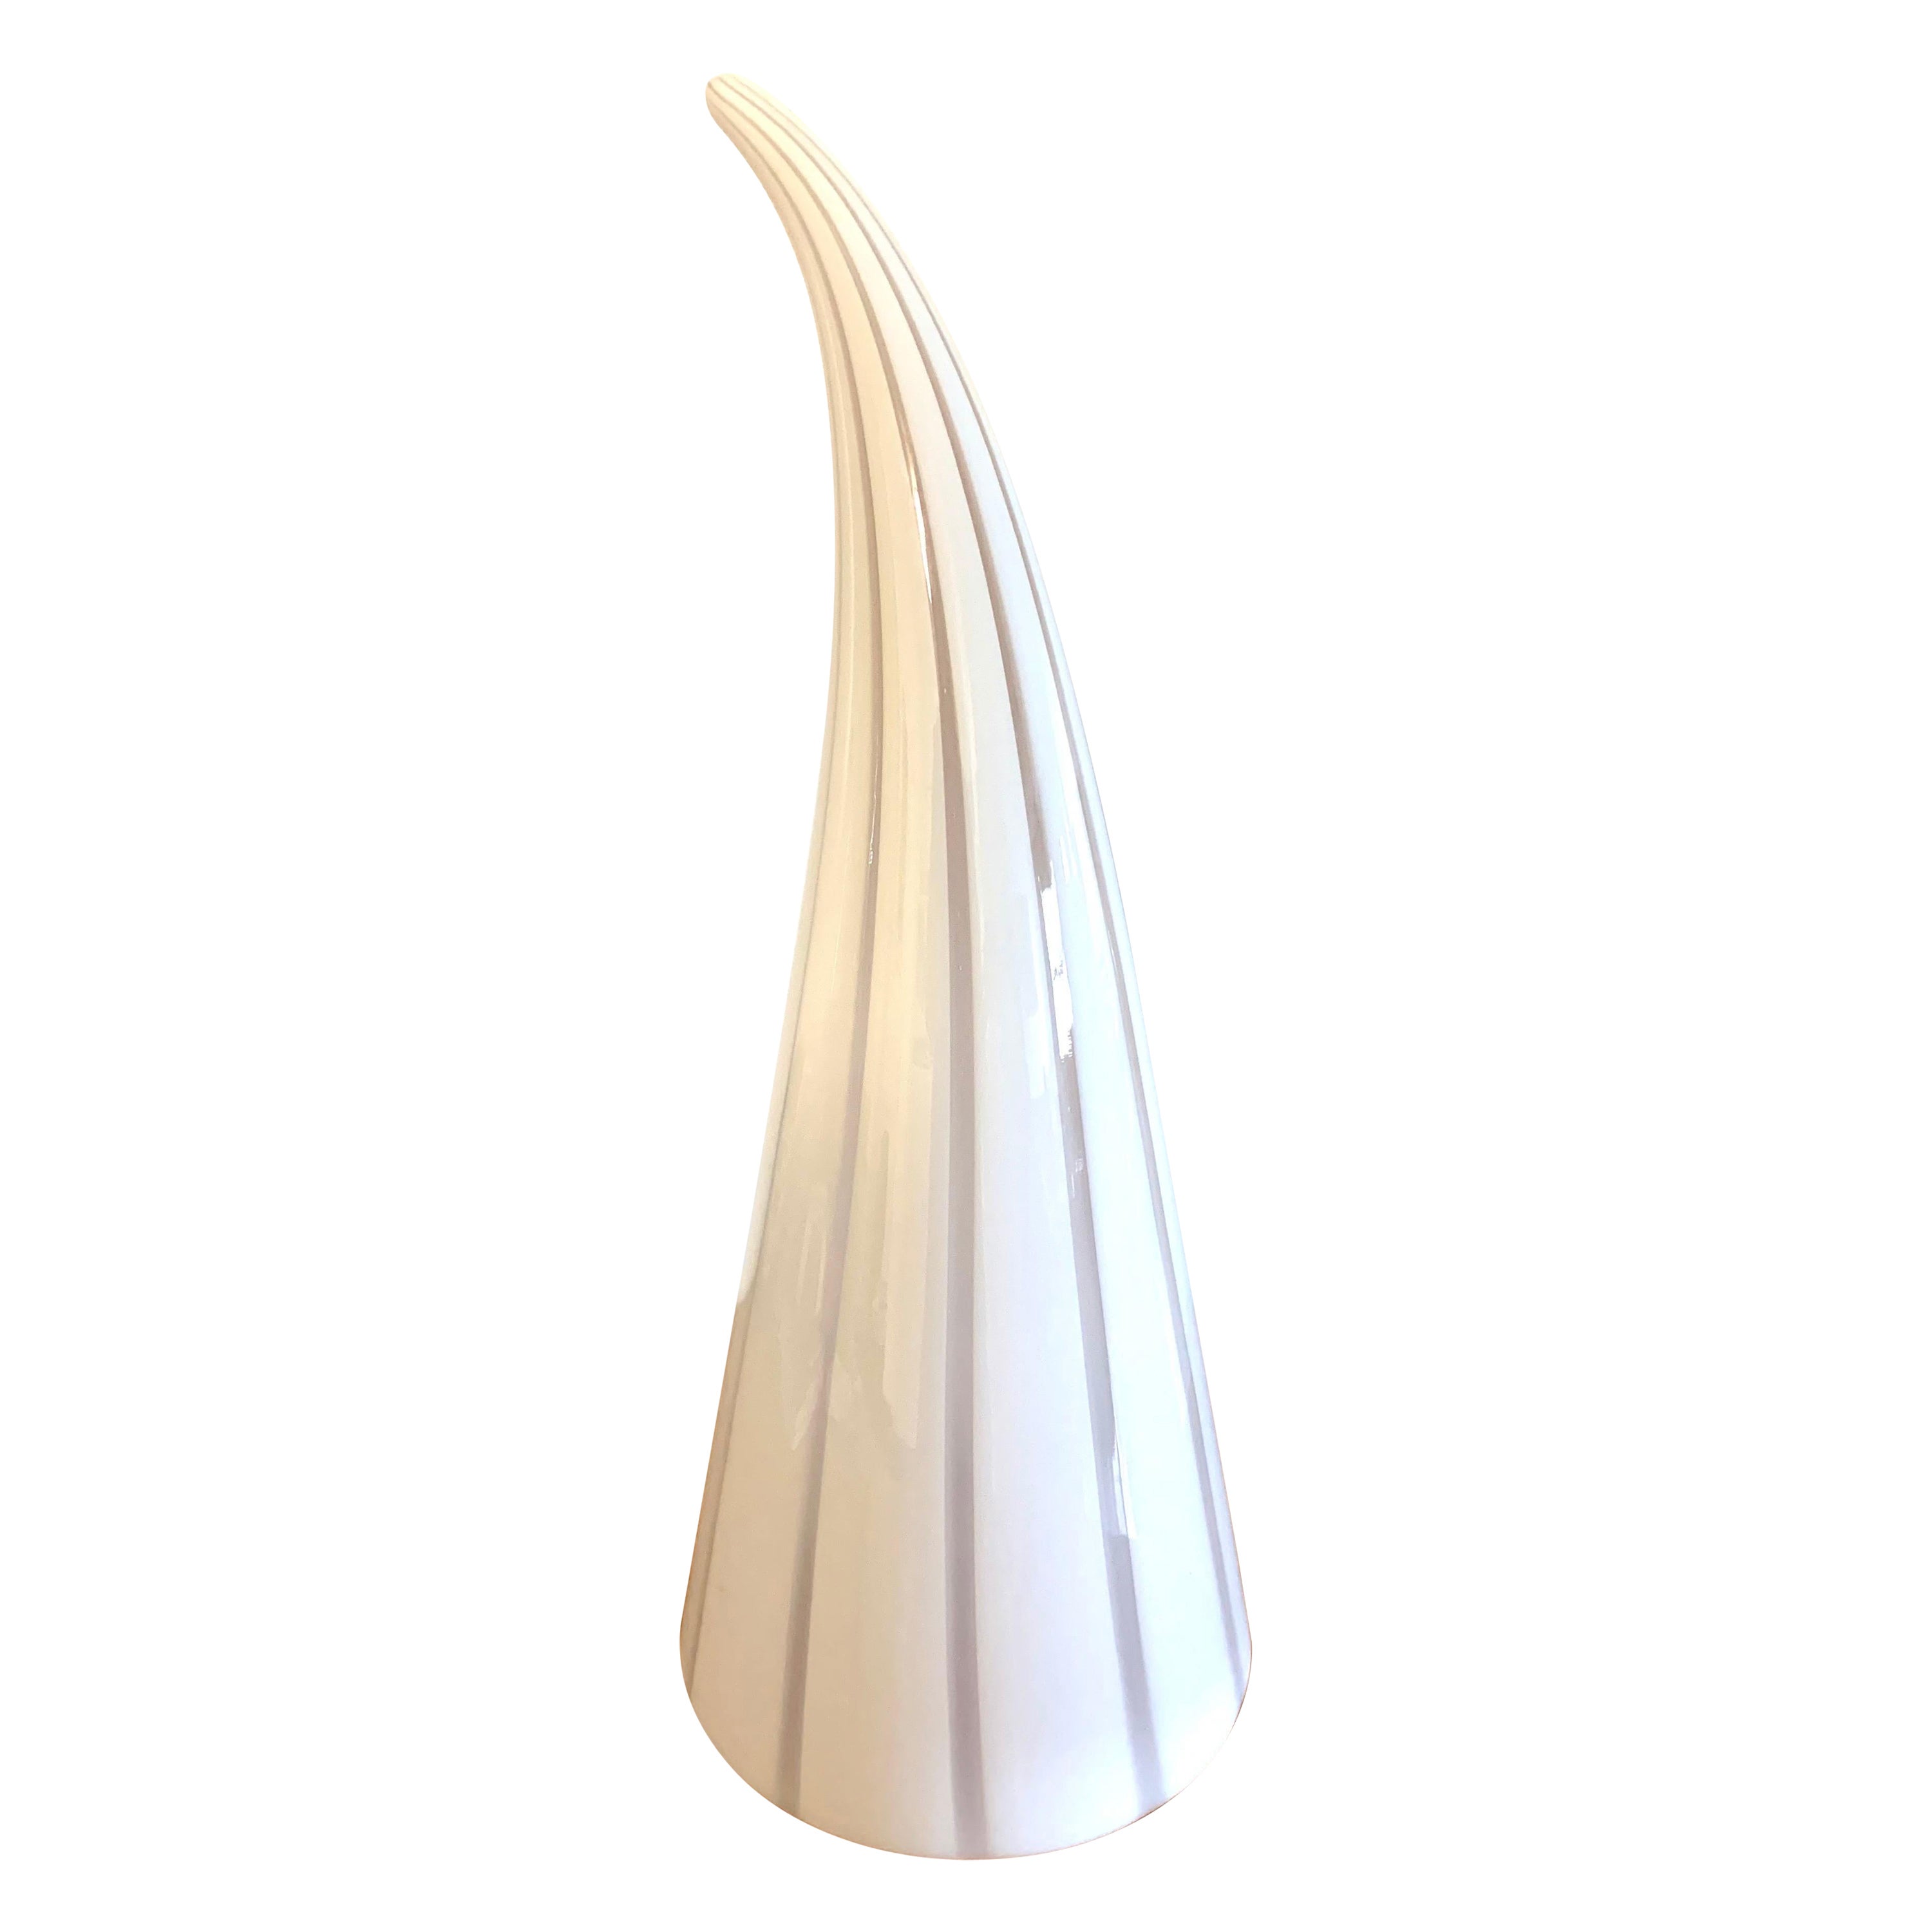 Große weiß gestreifte Murano-Tischlampe in Hornform, weiß